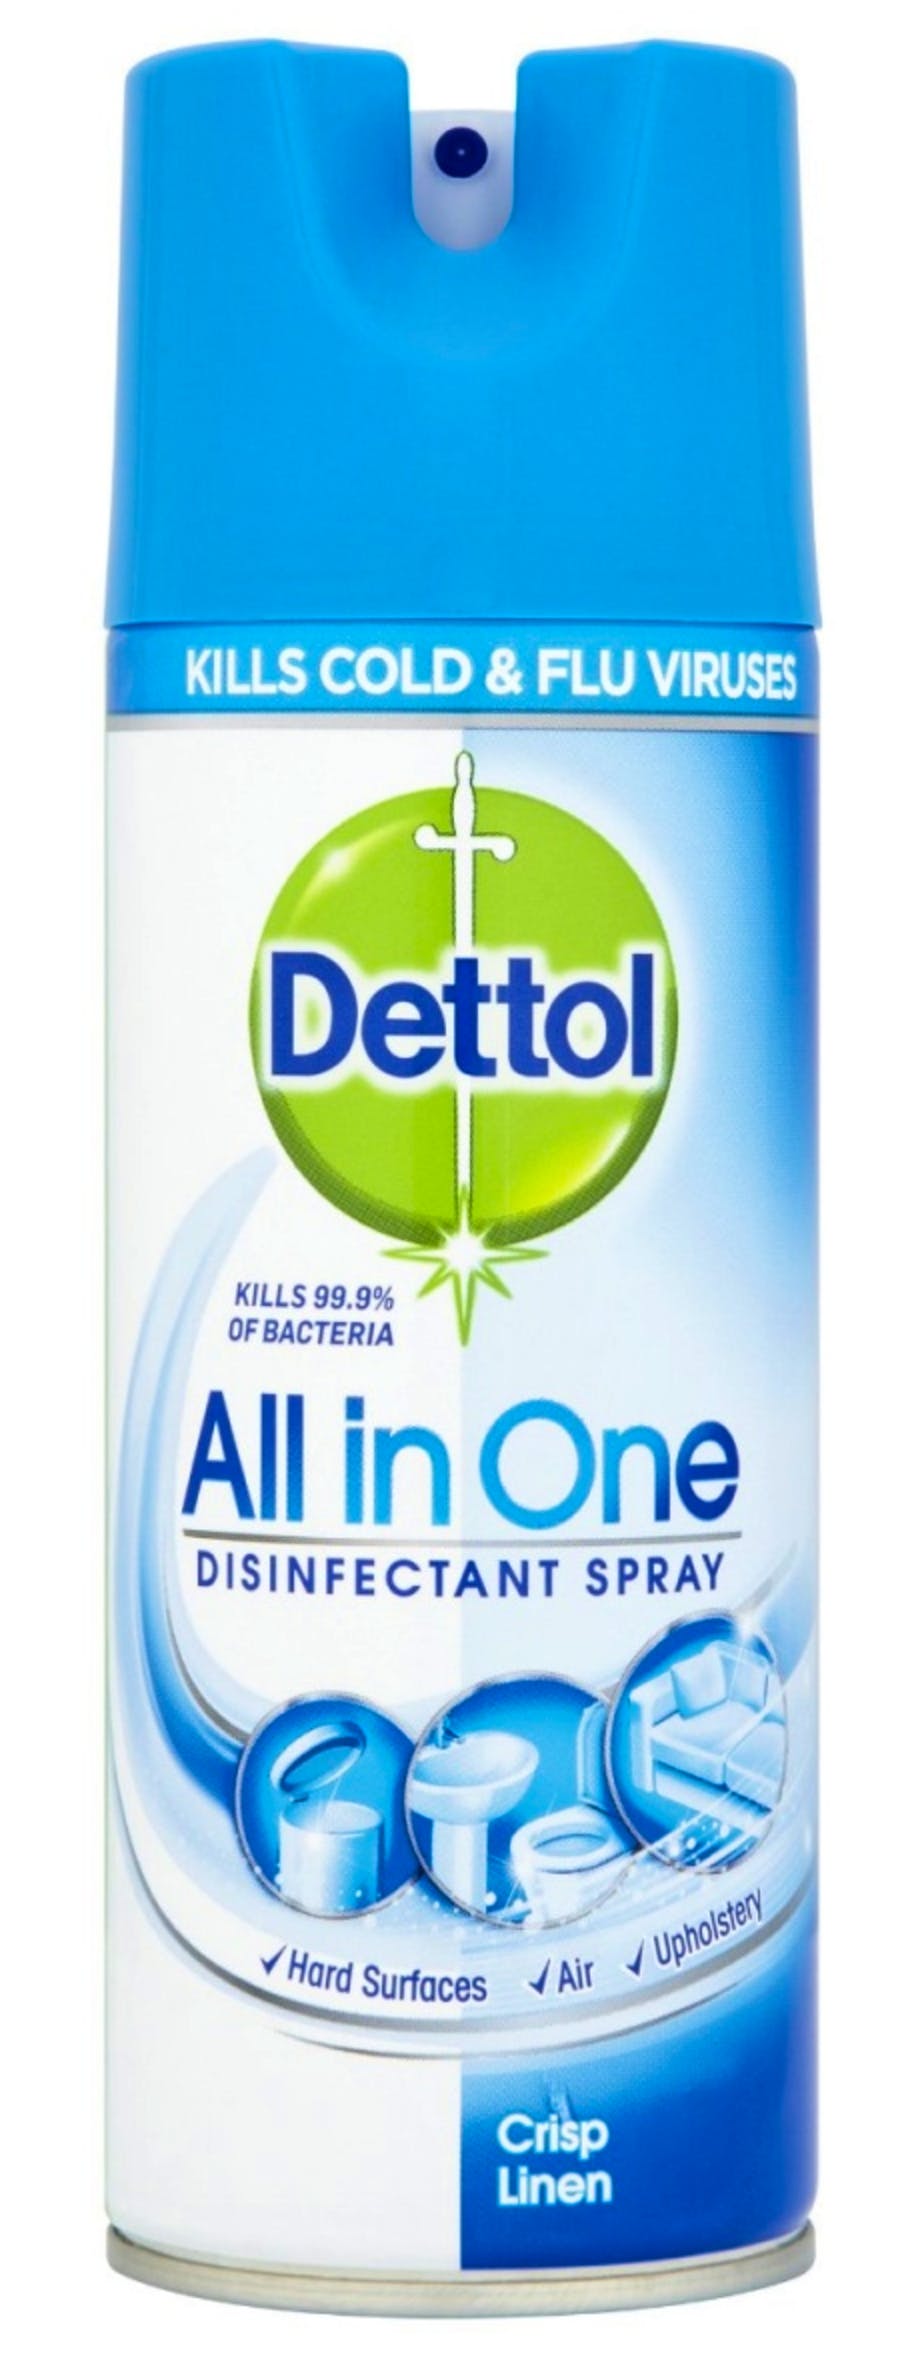 extract Twinkelen Subtropisch Dettol All in One Disinfecterende Spray Linen 400 ml - 3.29 EUR - luxplus.nl